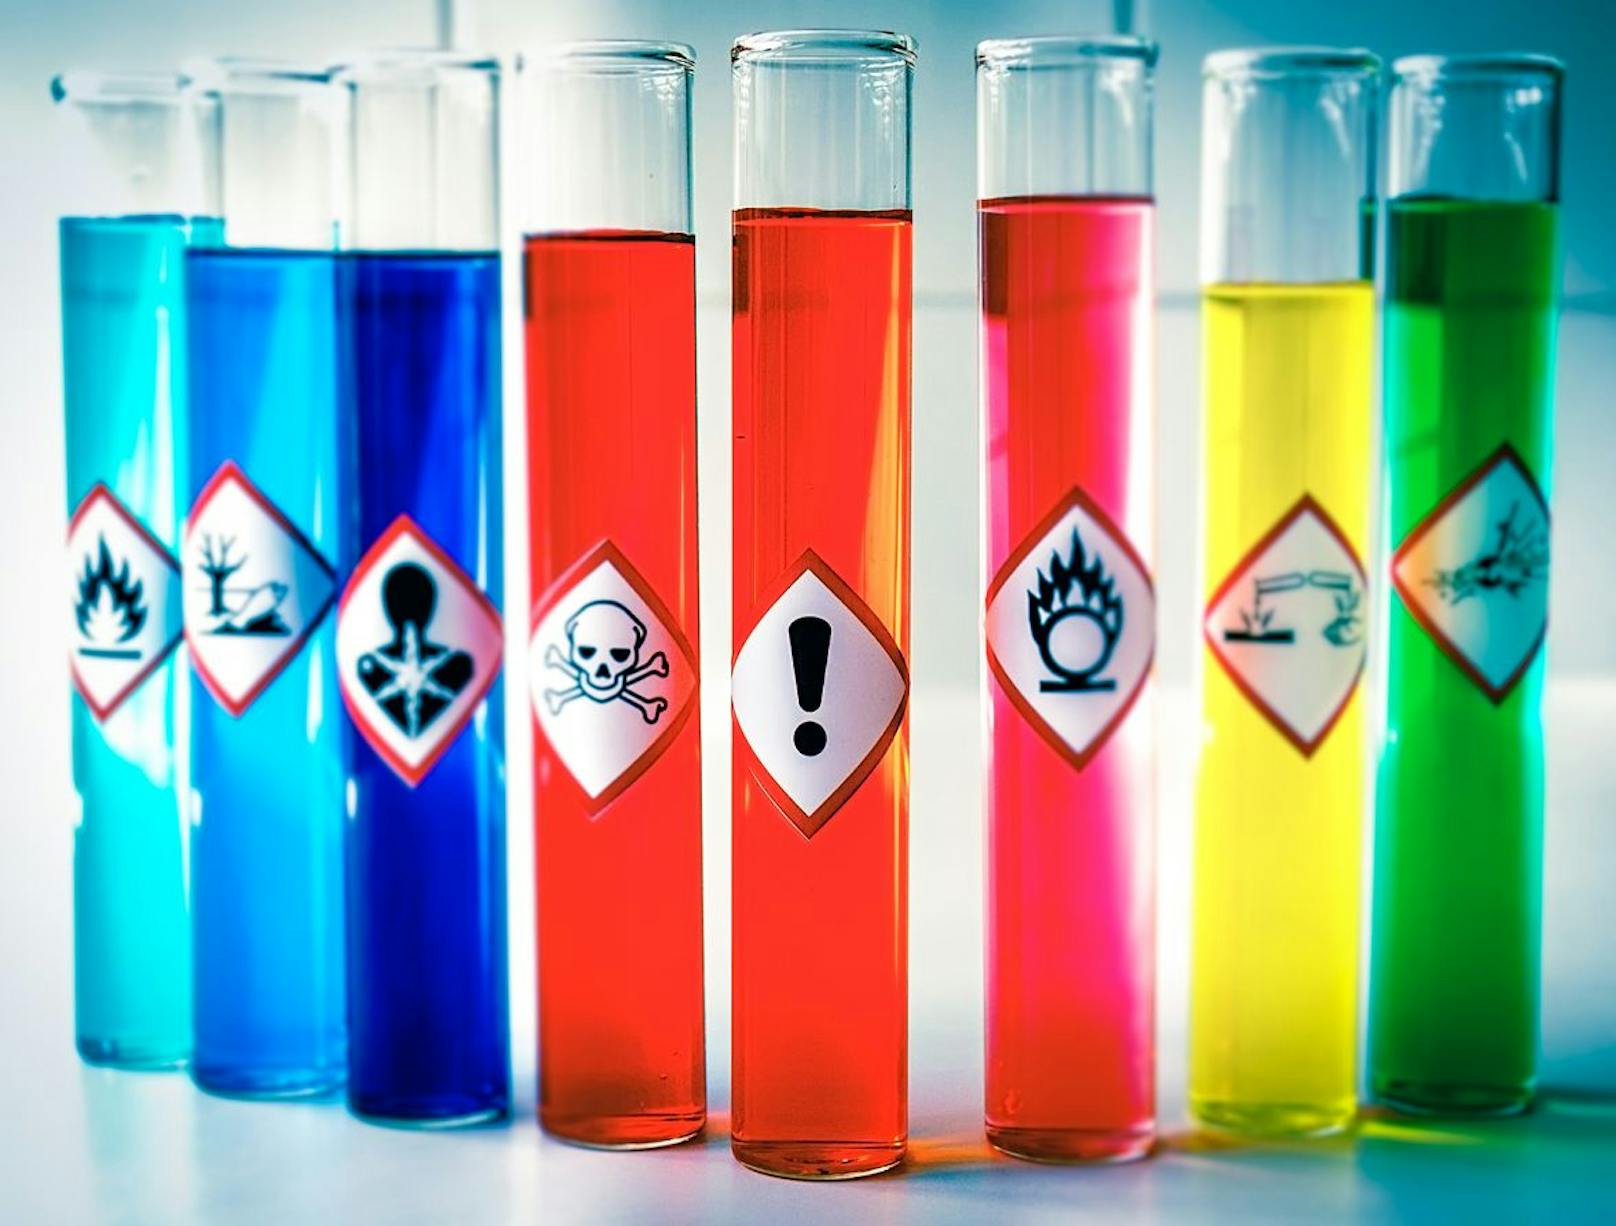 Chemikalien sind Teil der meisten Herstellungsprozesse, sie stecken in vielen Produkten und entweichen mitunter unbemerkt in die Umwelt, aus der sie wiederum vom Menschen über die Nahrung oder die Atmung aufgenommen werden können.